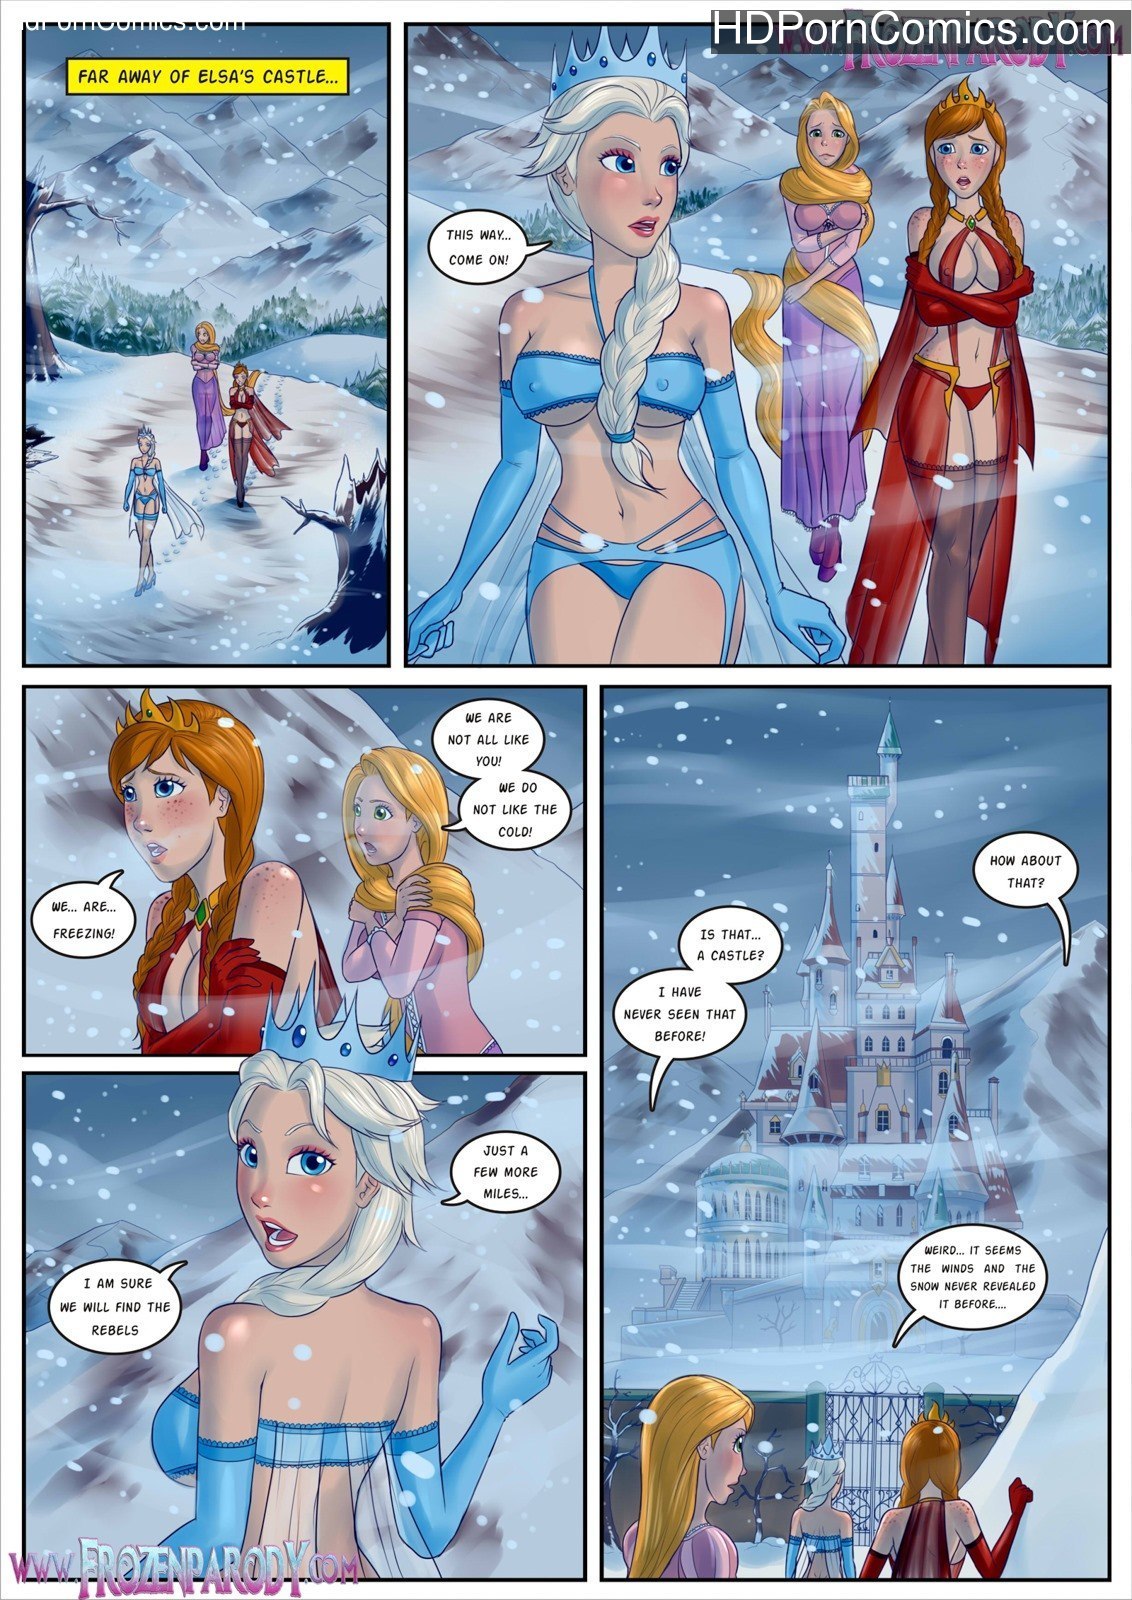 Frozen Cartoon Characters Nude - Cartoon porn frozen excited too - Sex online cutting.